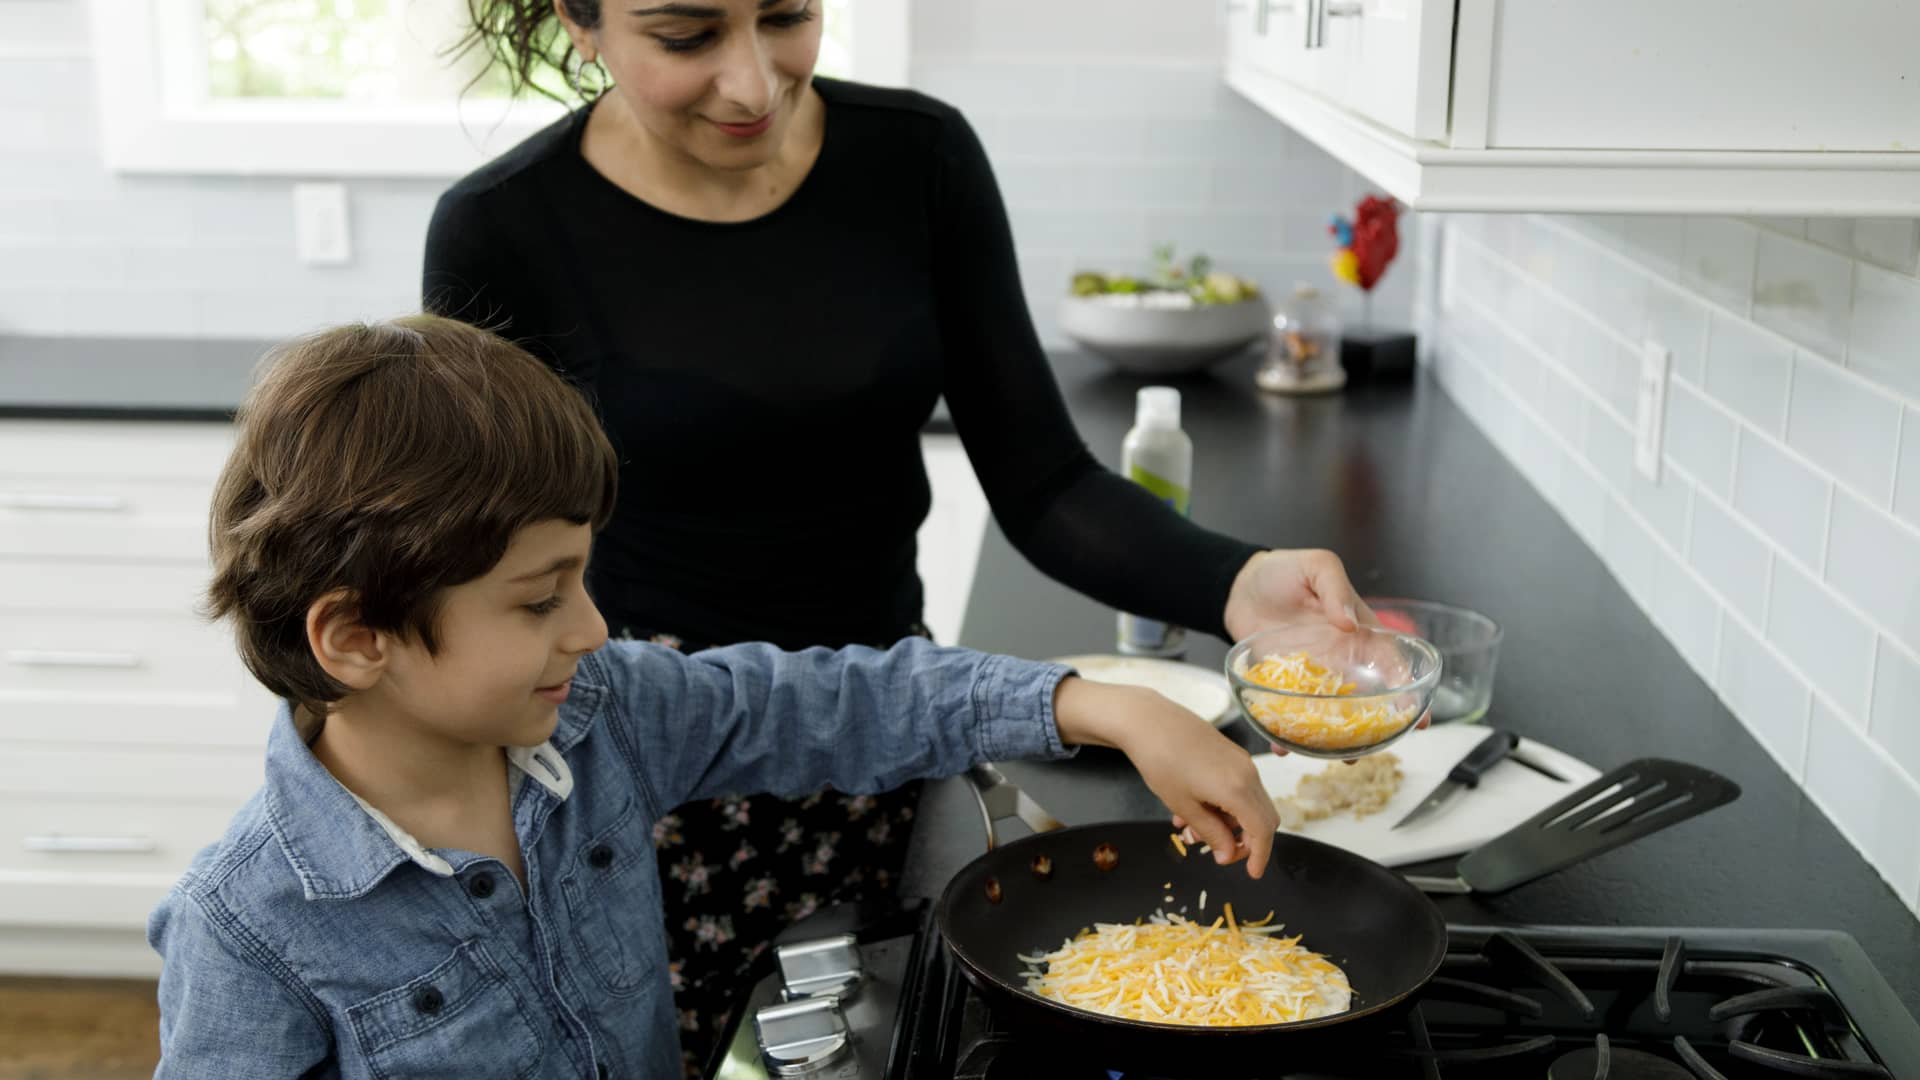 Madre que recibe el bono social en luz cocinando con su hijo